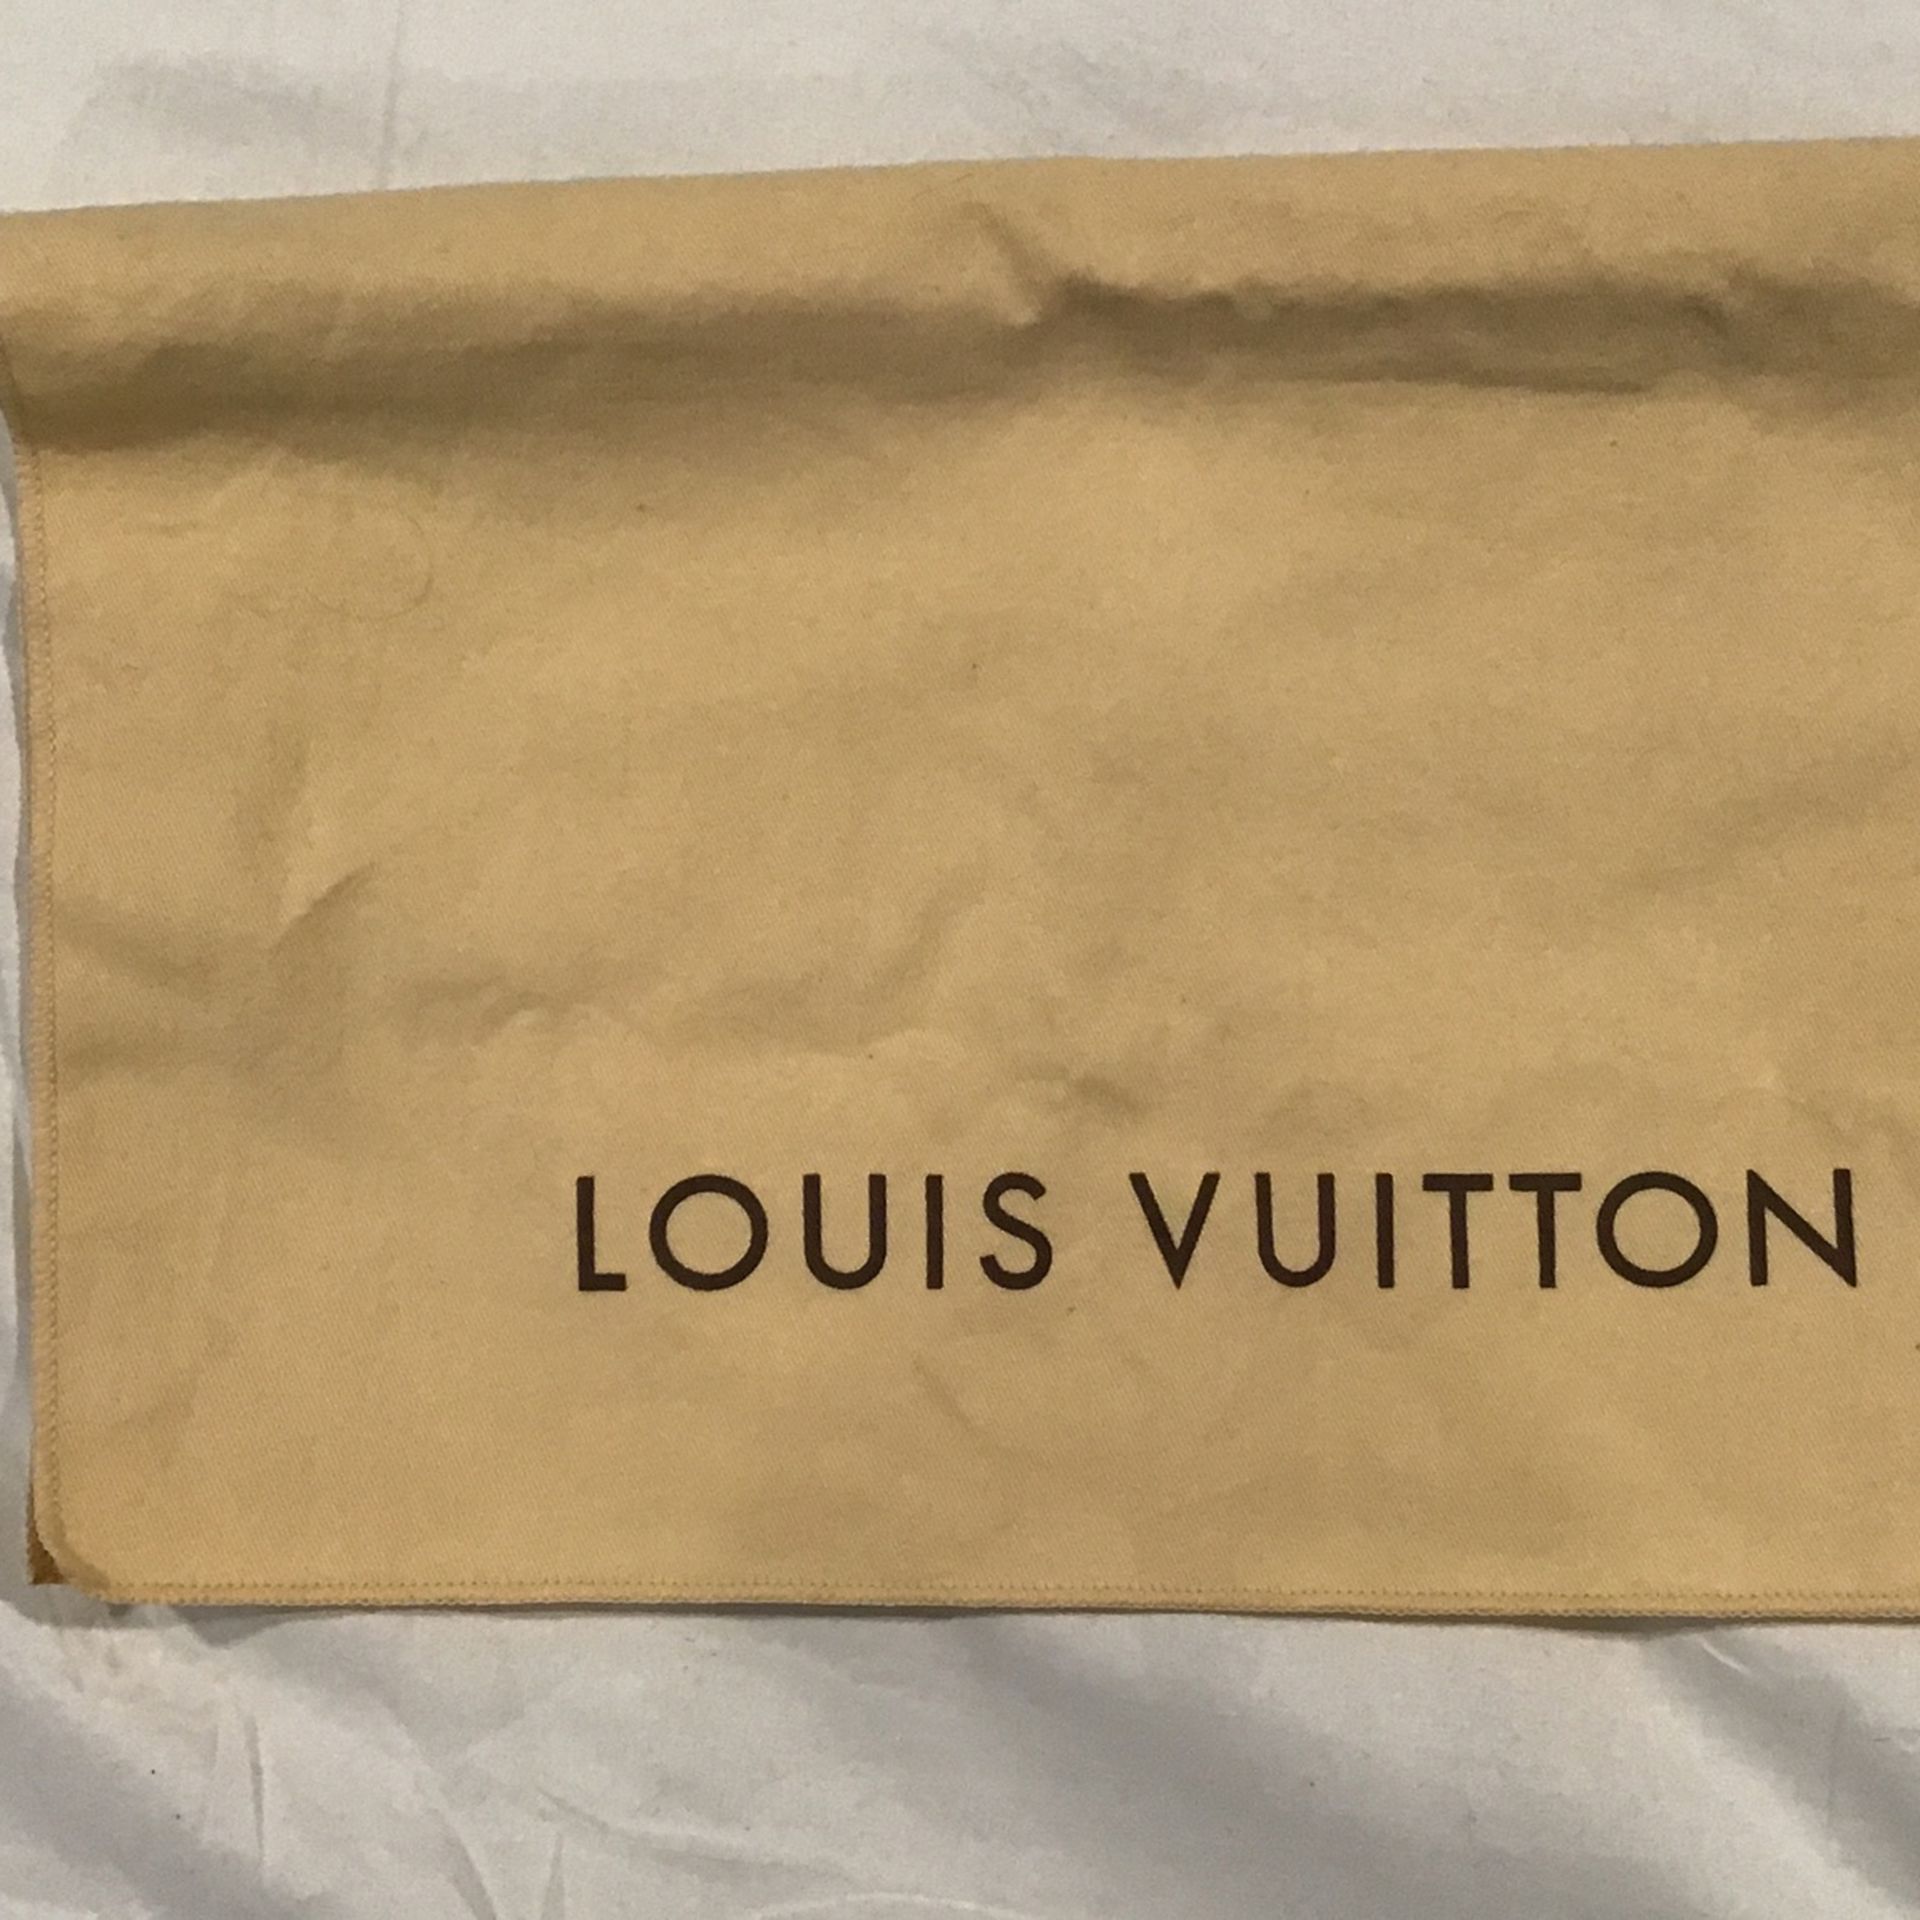 Lot 270 - Medium Rare X Louis Vuitton Stars Monogram